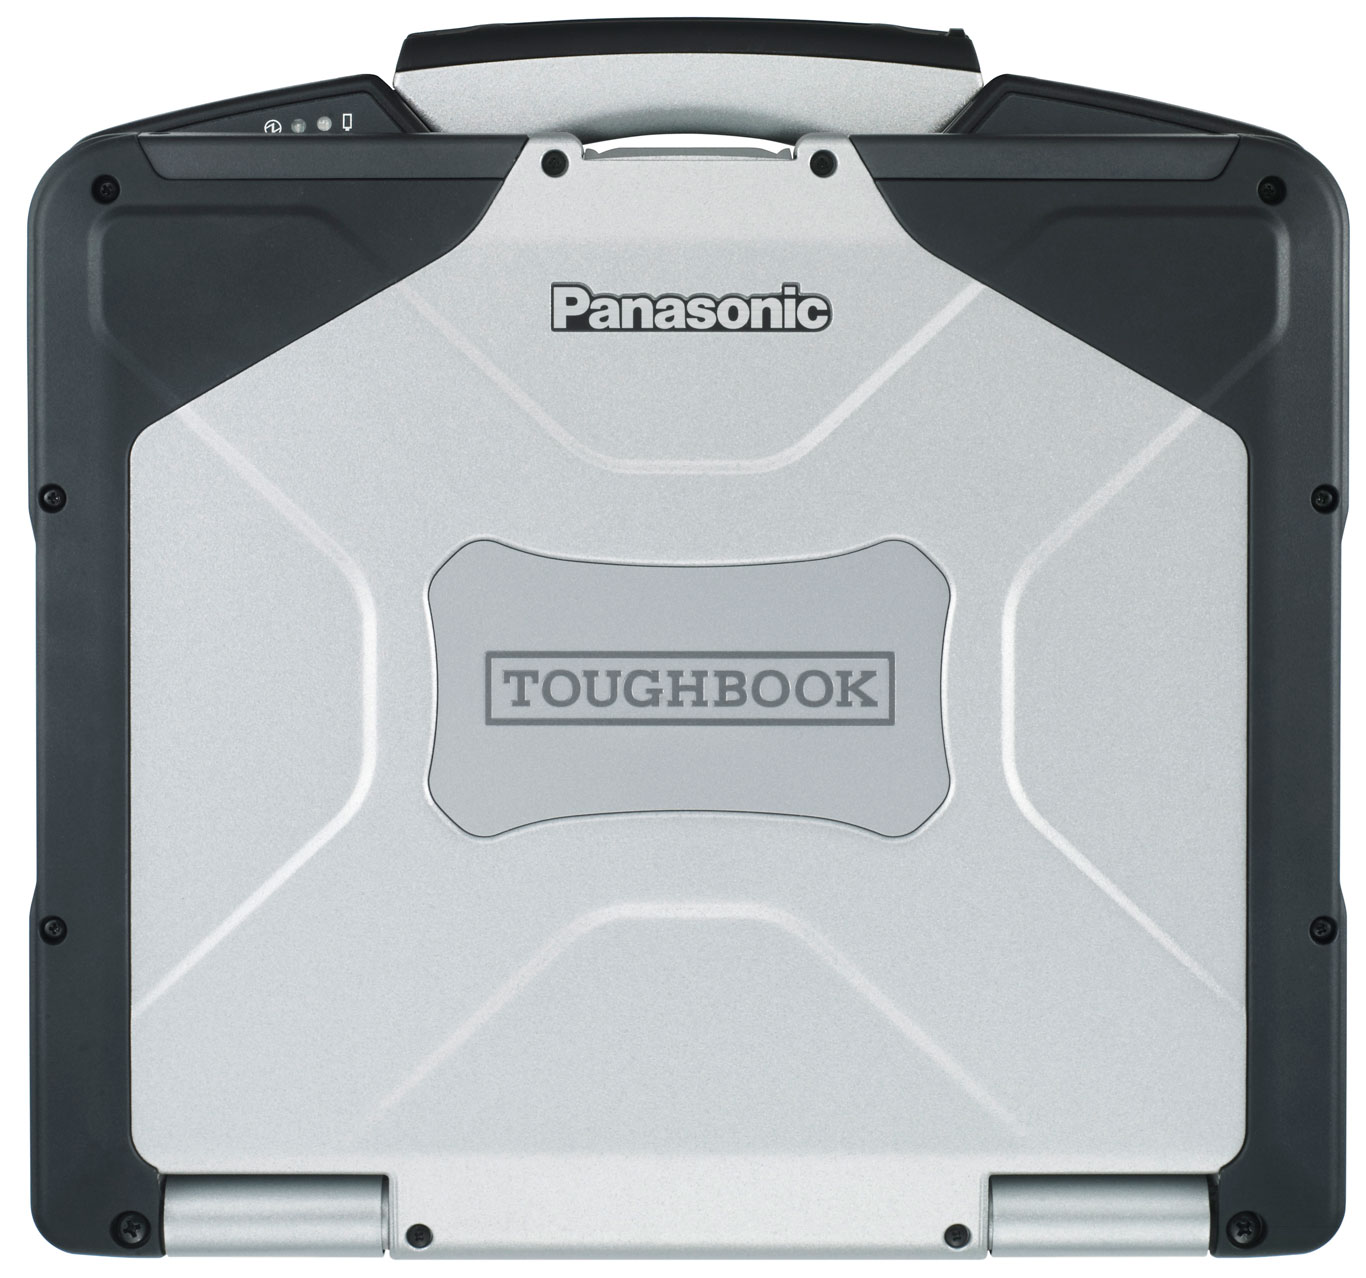 Toughbook Logo photo - 1